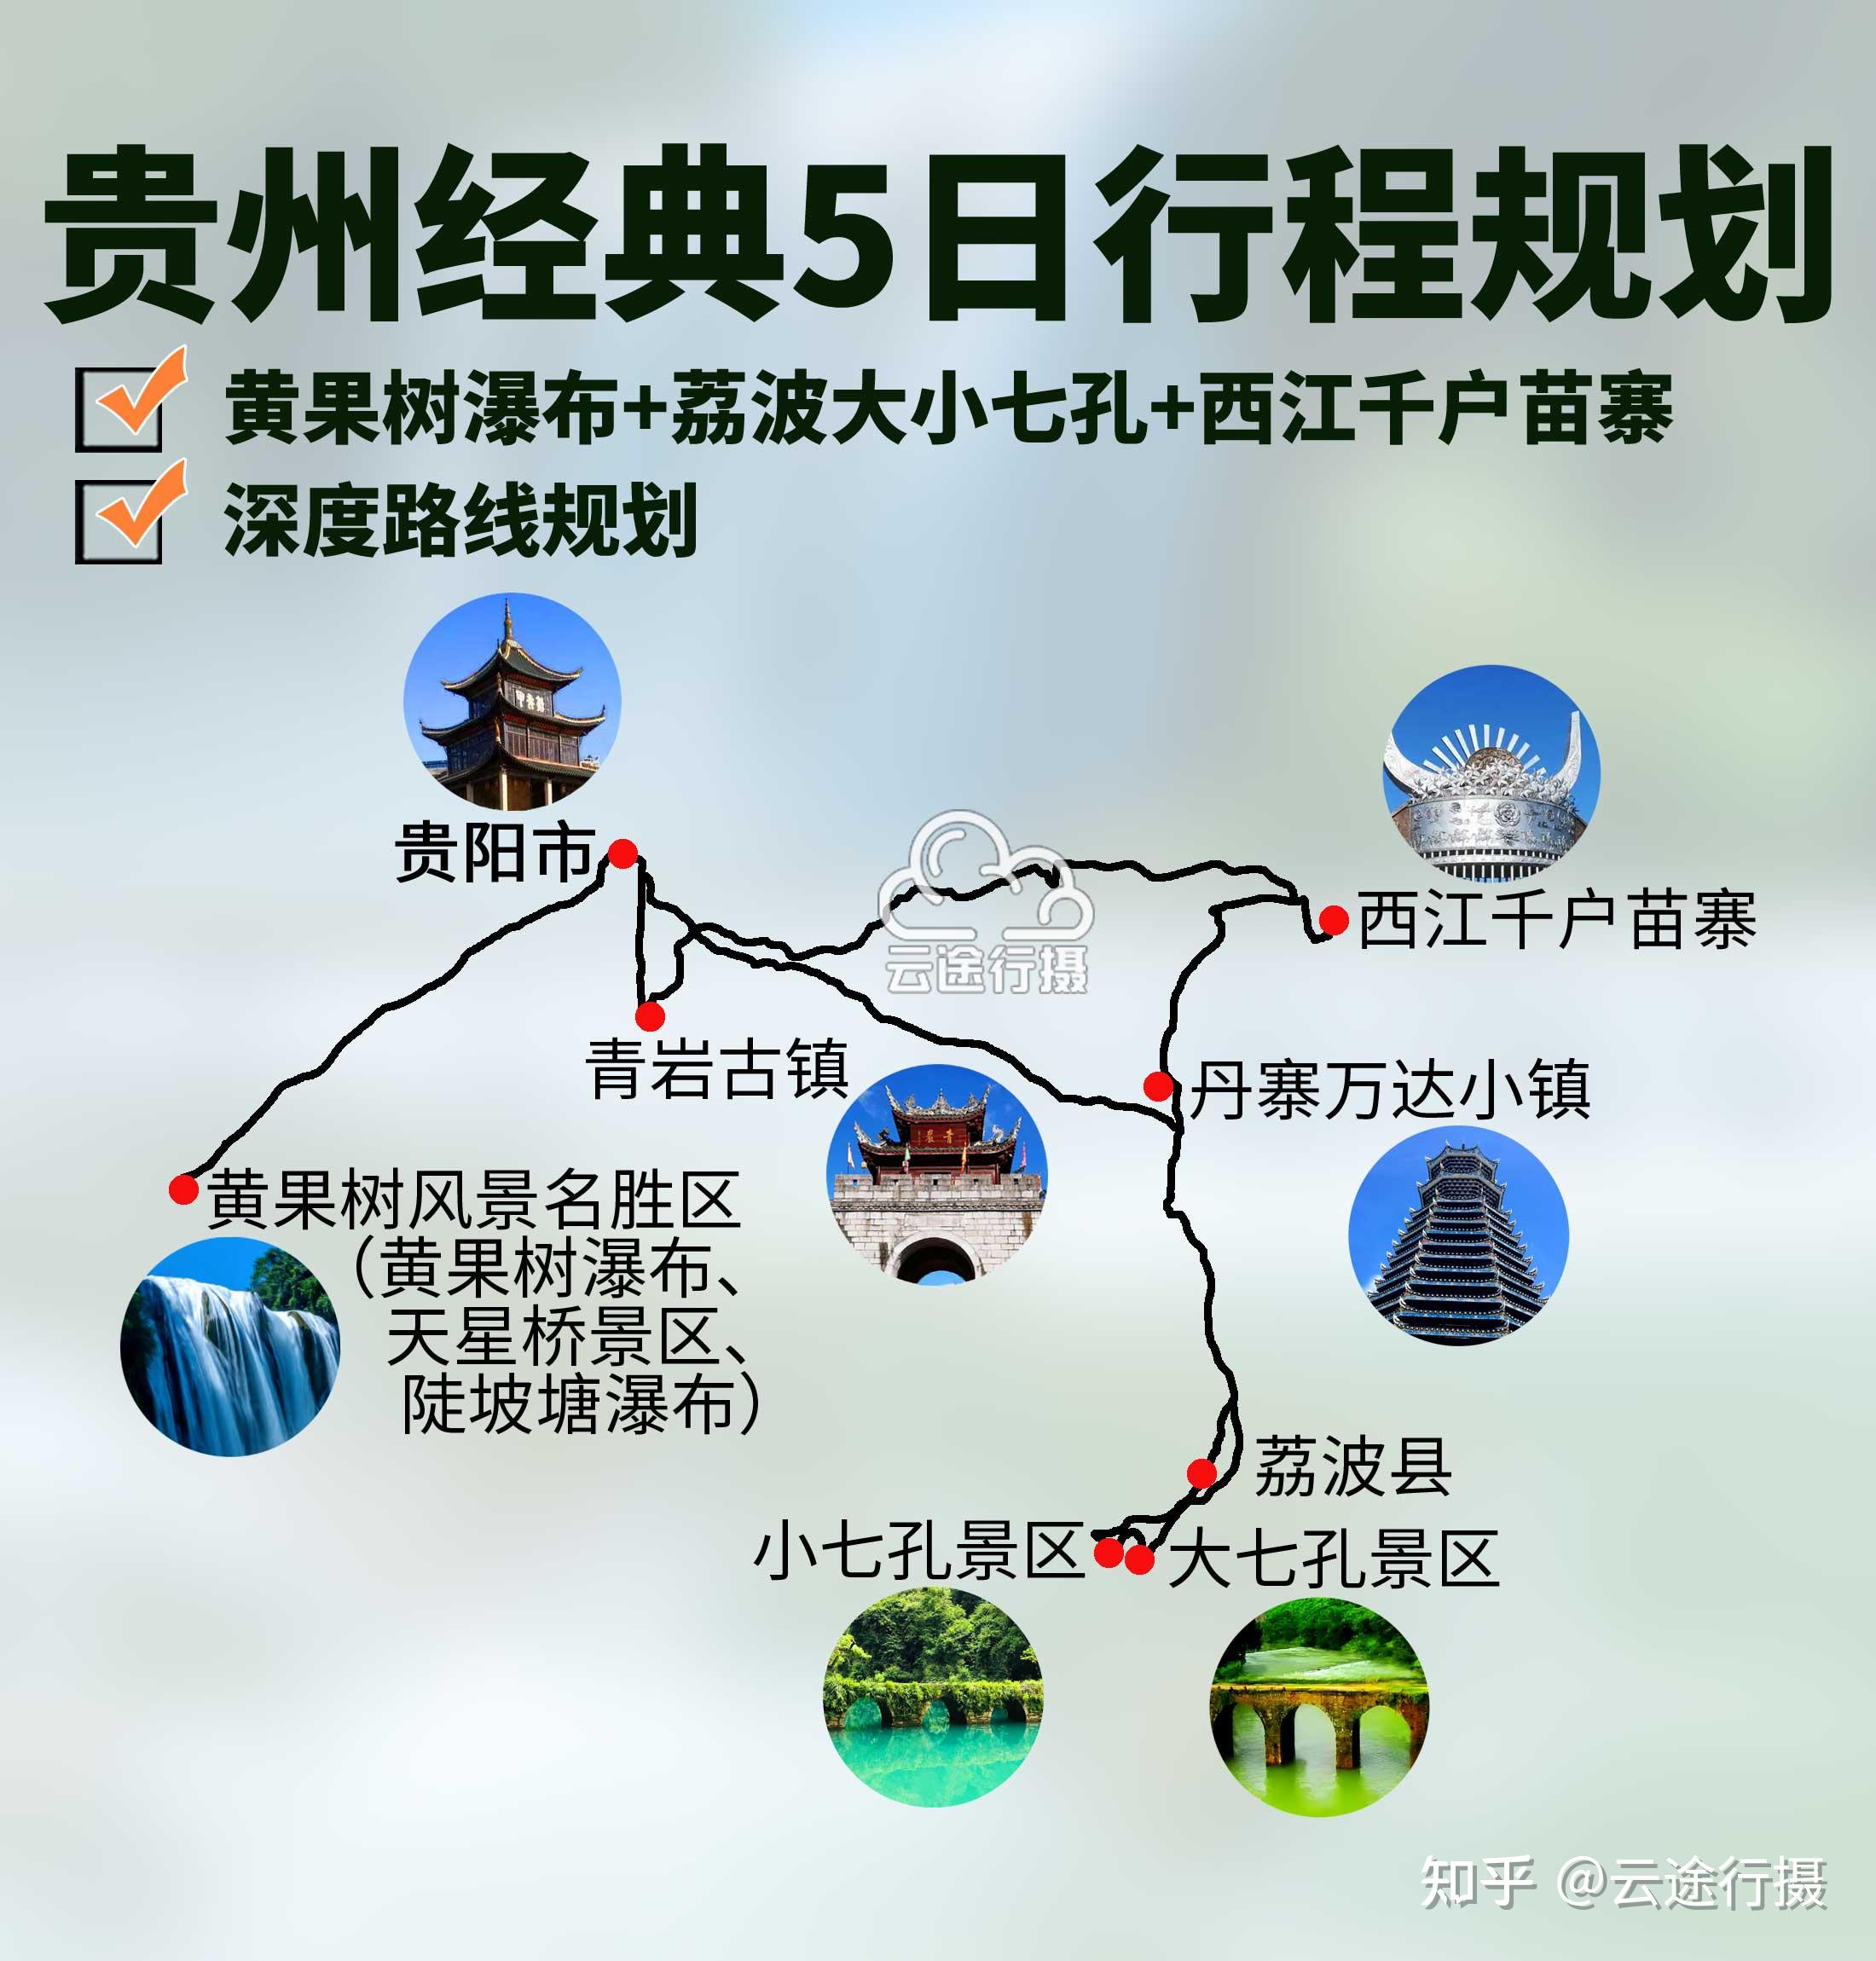 贵州黄果树瀑布 荔波小七孔 西江千户苗寨5日旅游路线规划攻略,贵州